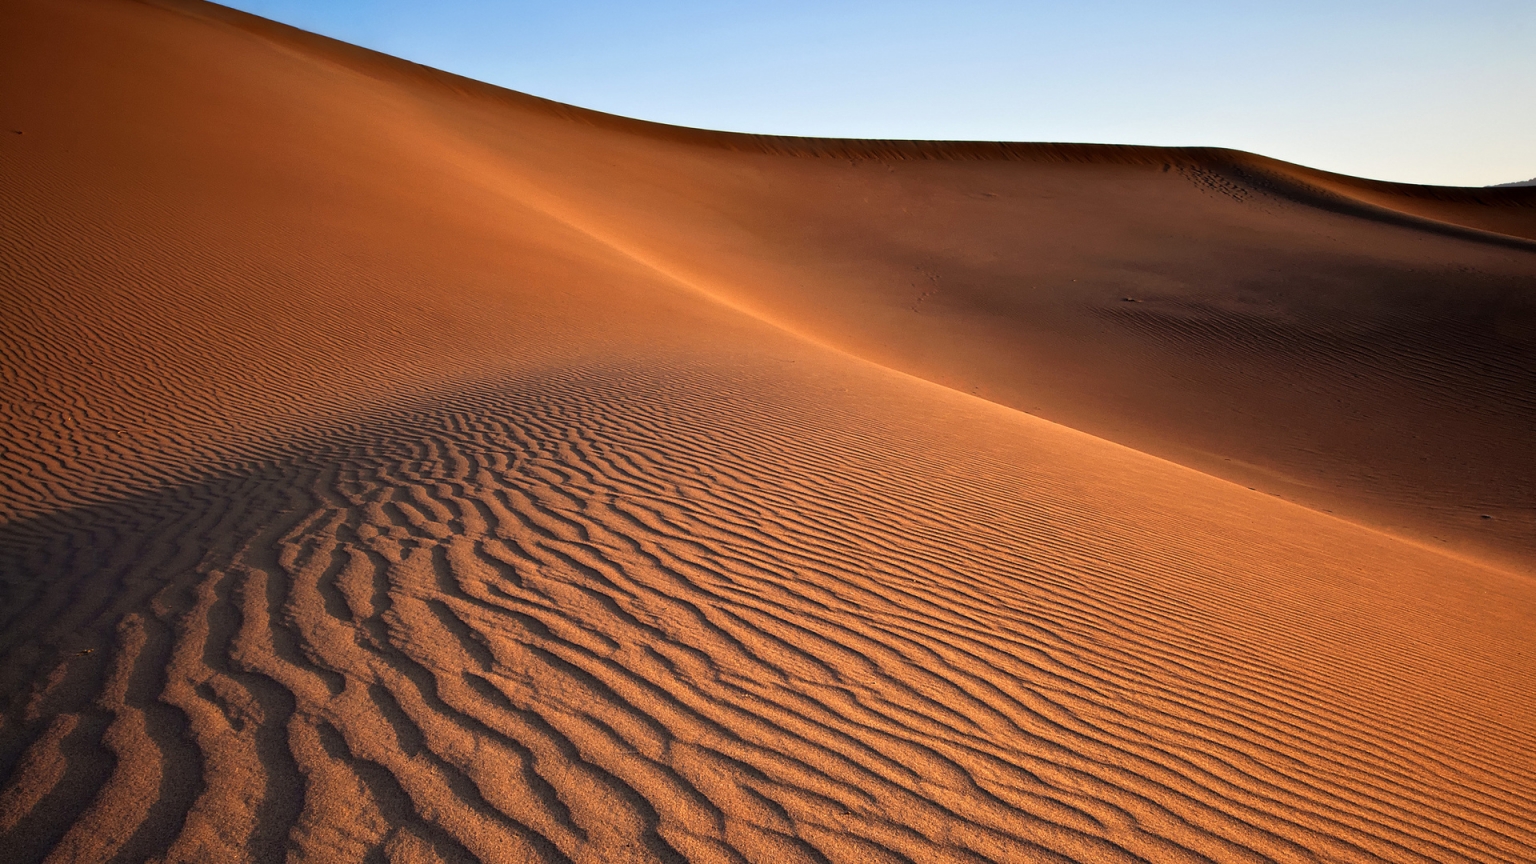 Desert Landscape for 1536 x 864 HDTV resolution